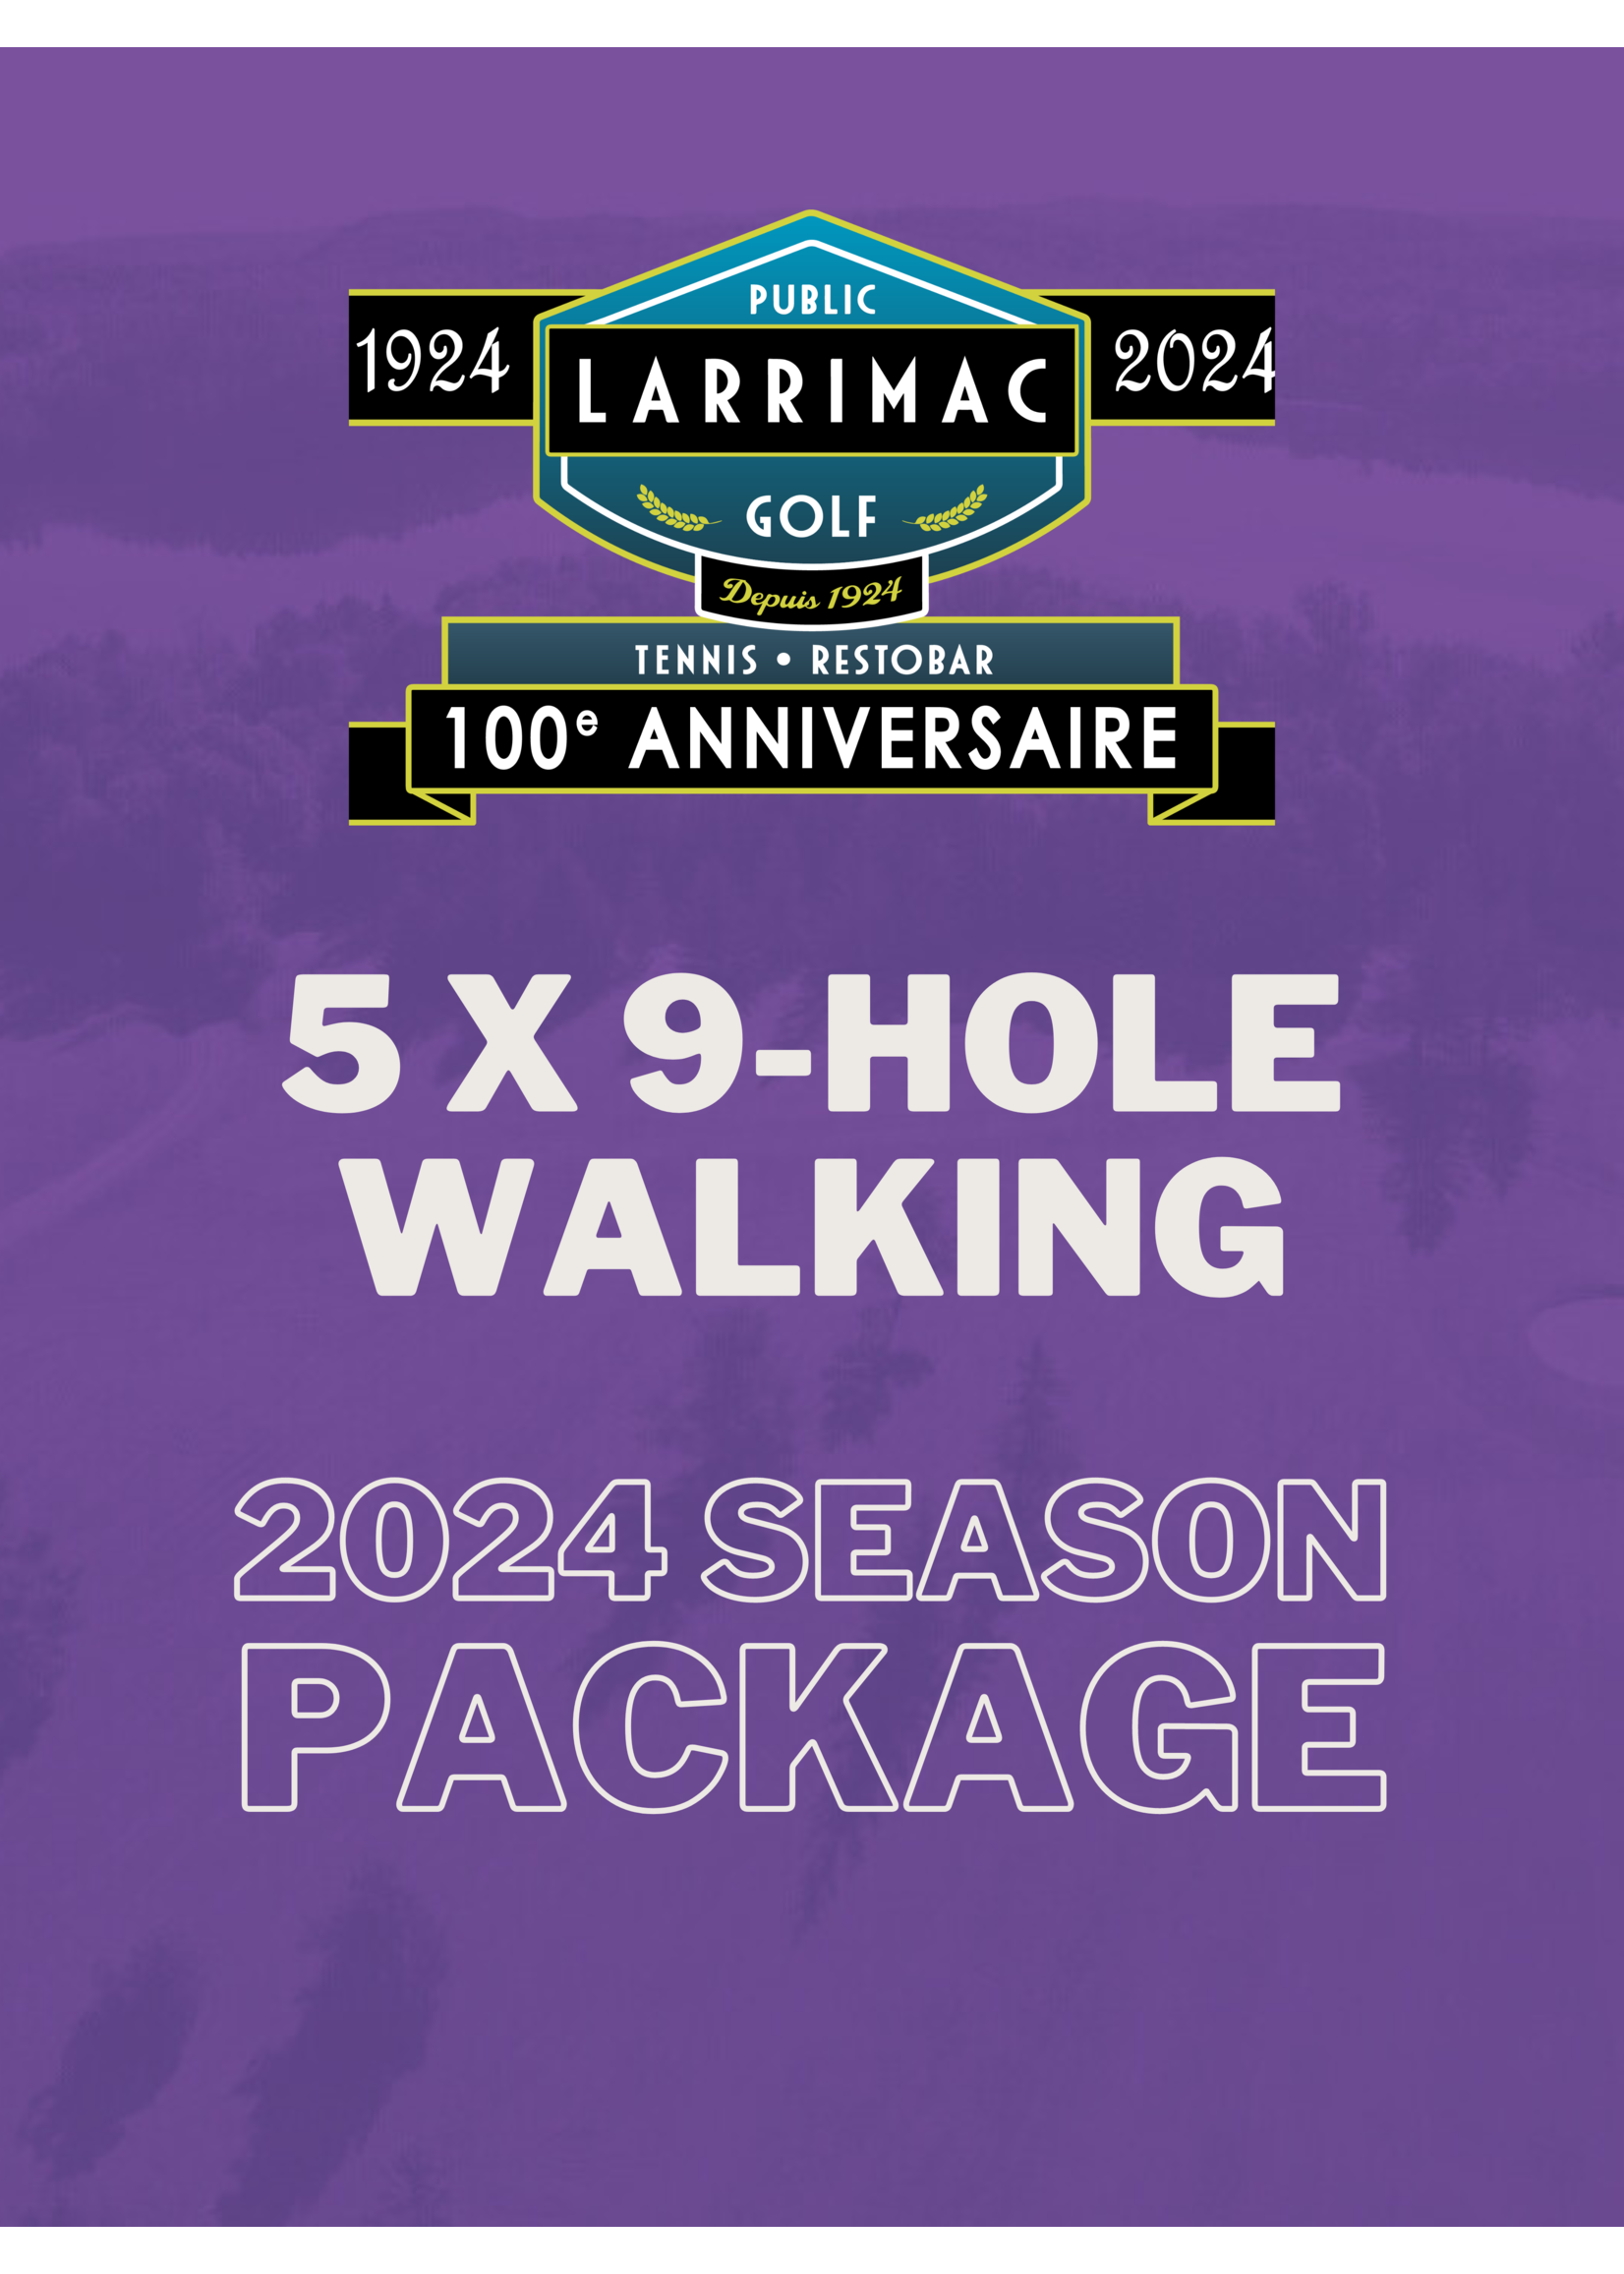 2024 packages 5x 9 Trous Marche Paquet (Saison 2024 10% de réduction !)